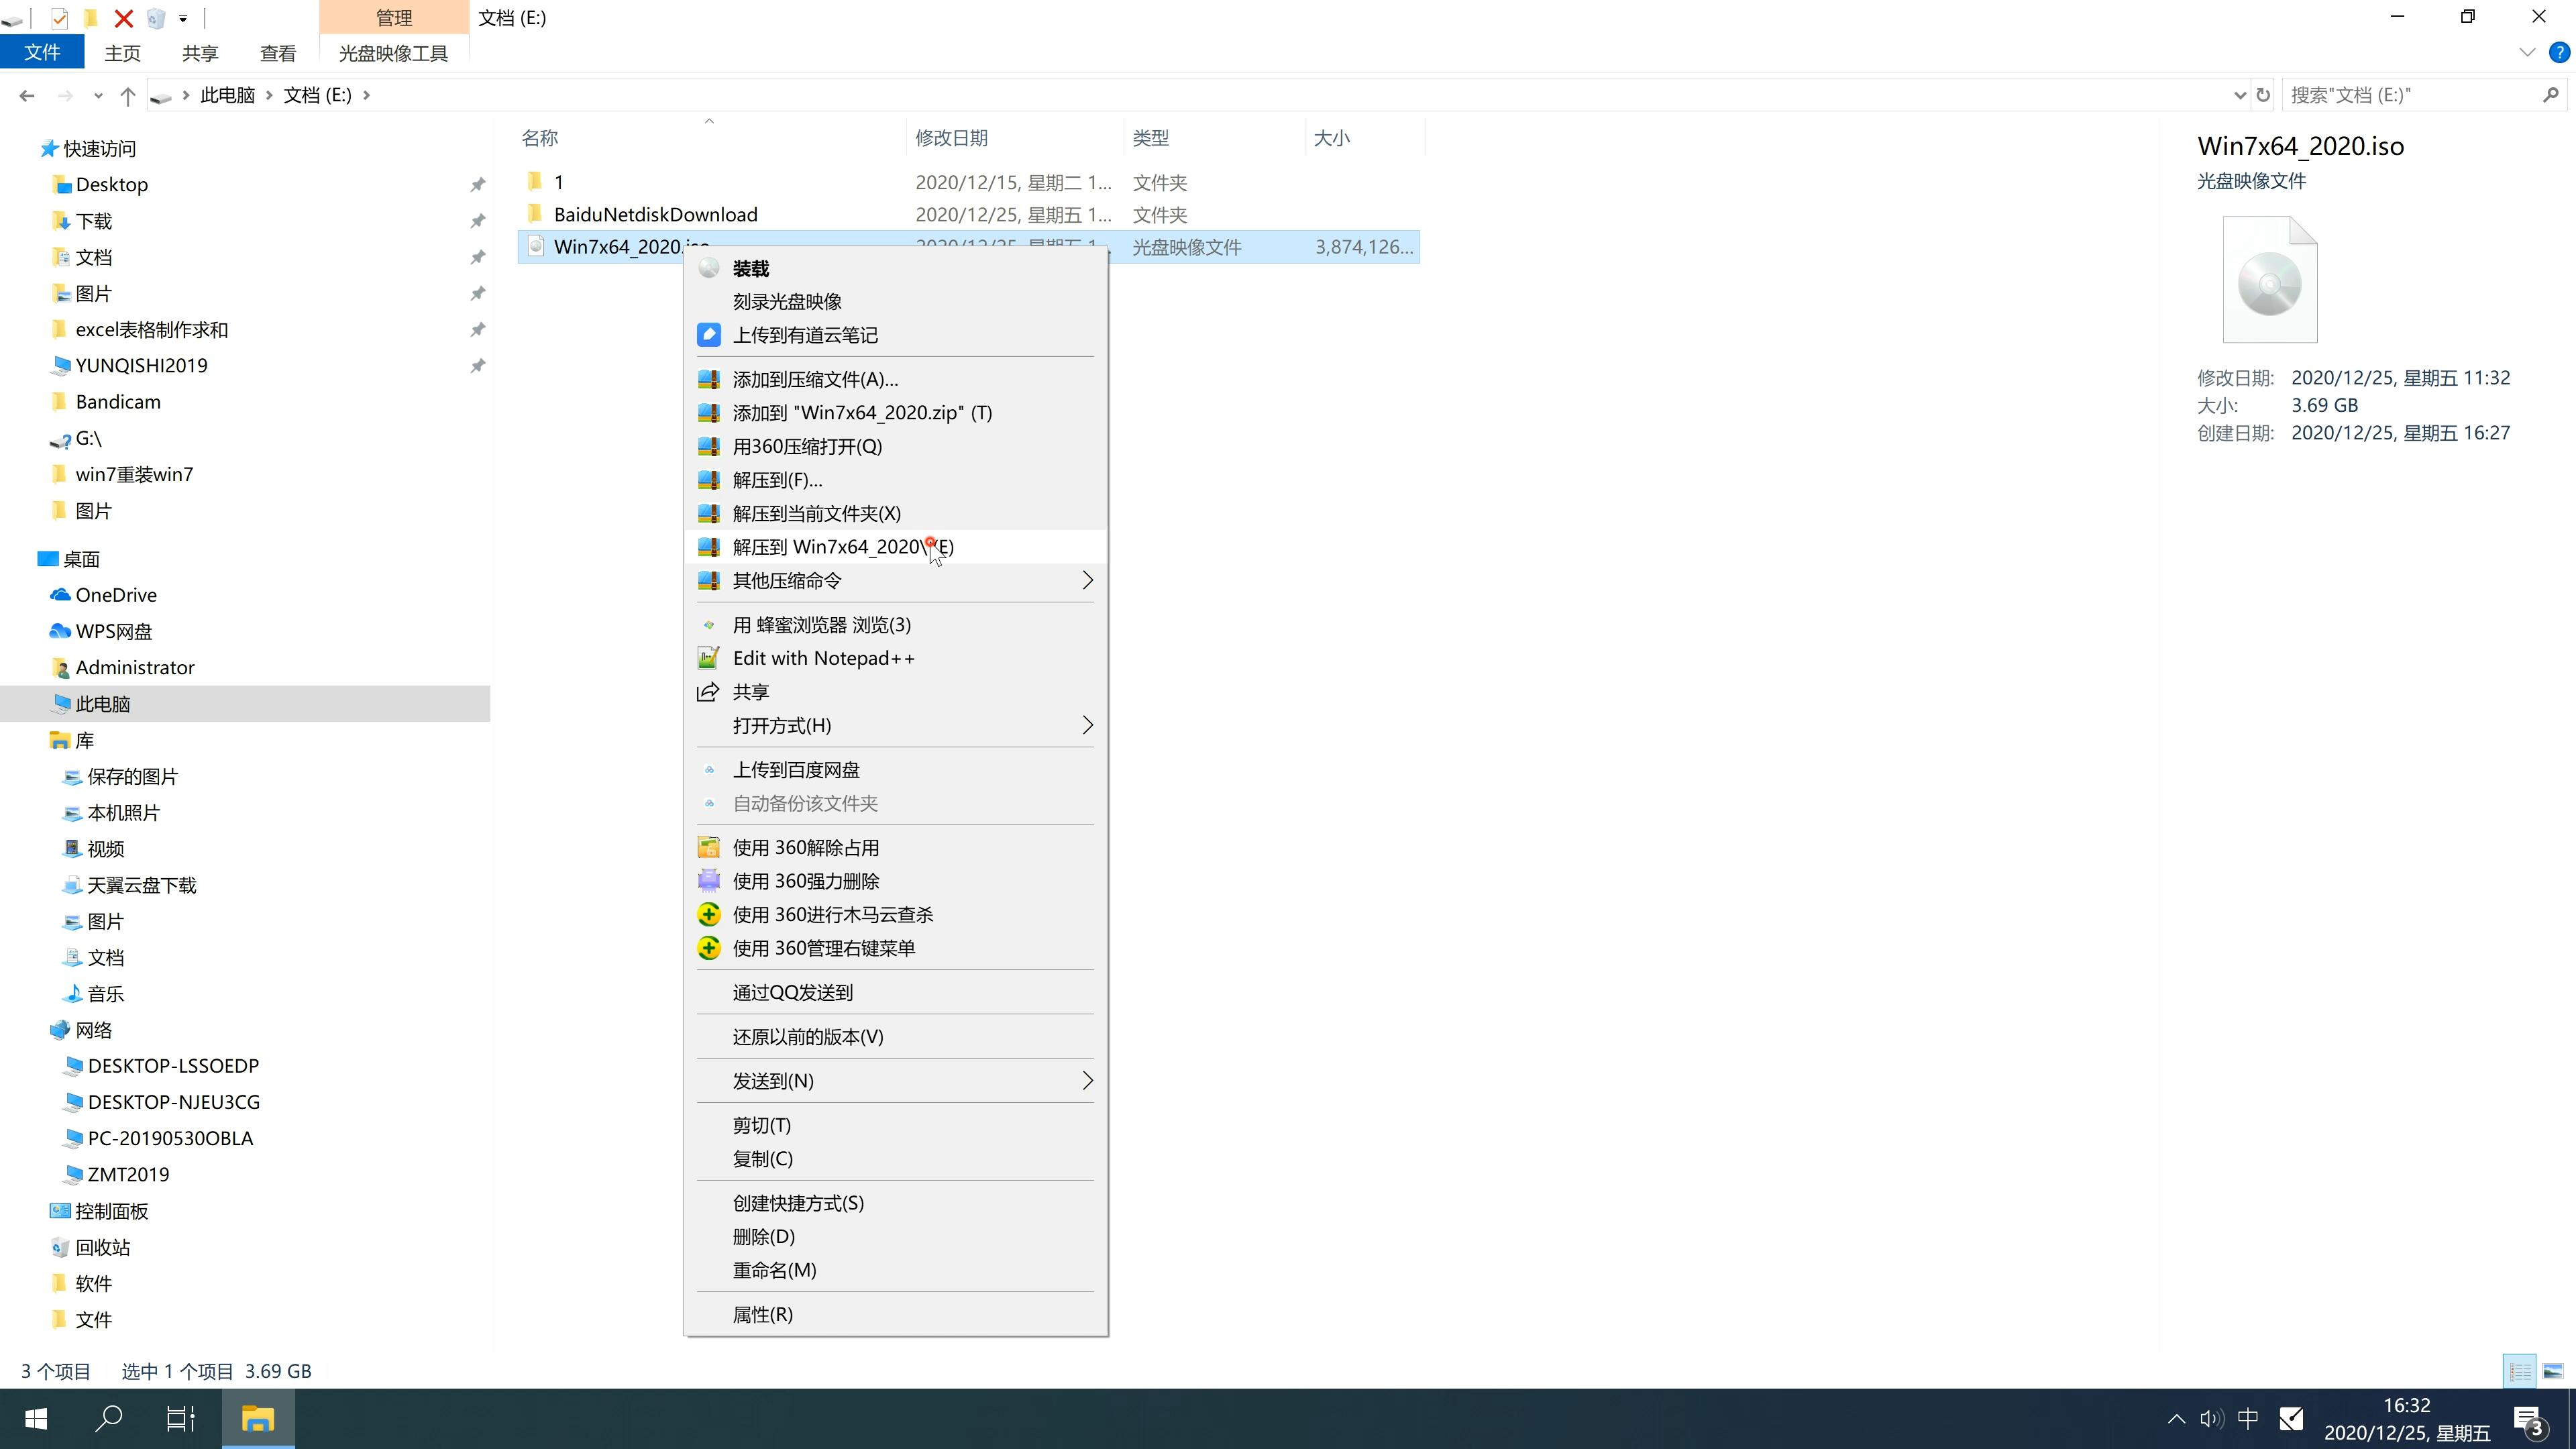 新苹果笔记本专用系统  windows7 64位  完整旗舰版 V2022.12(2)